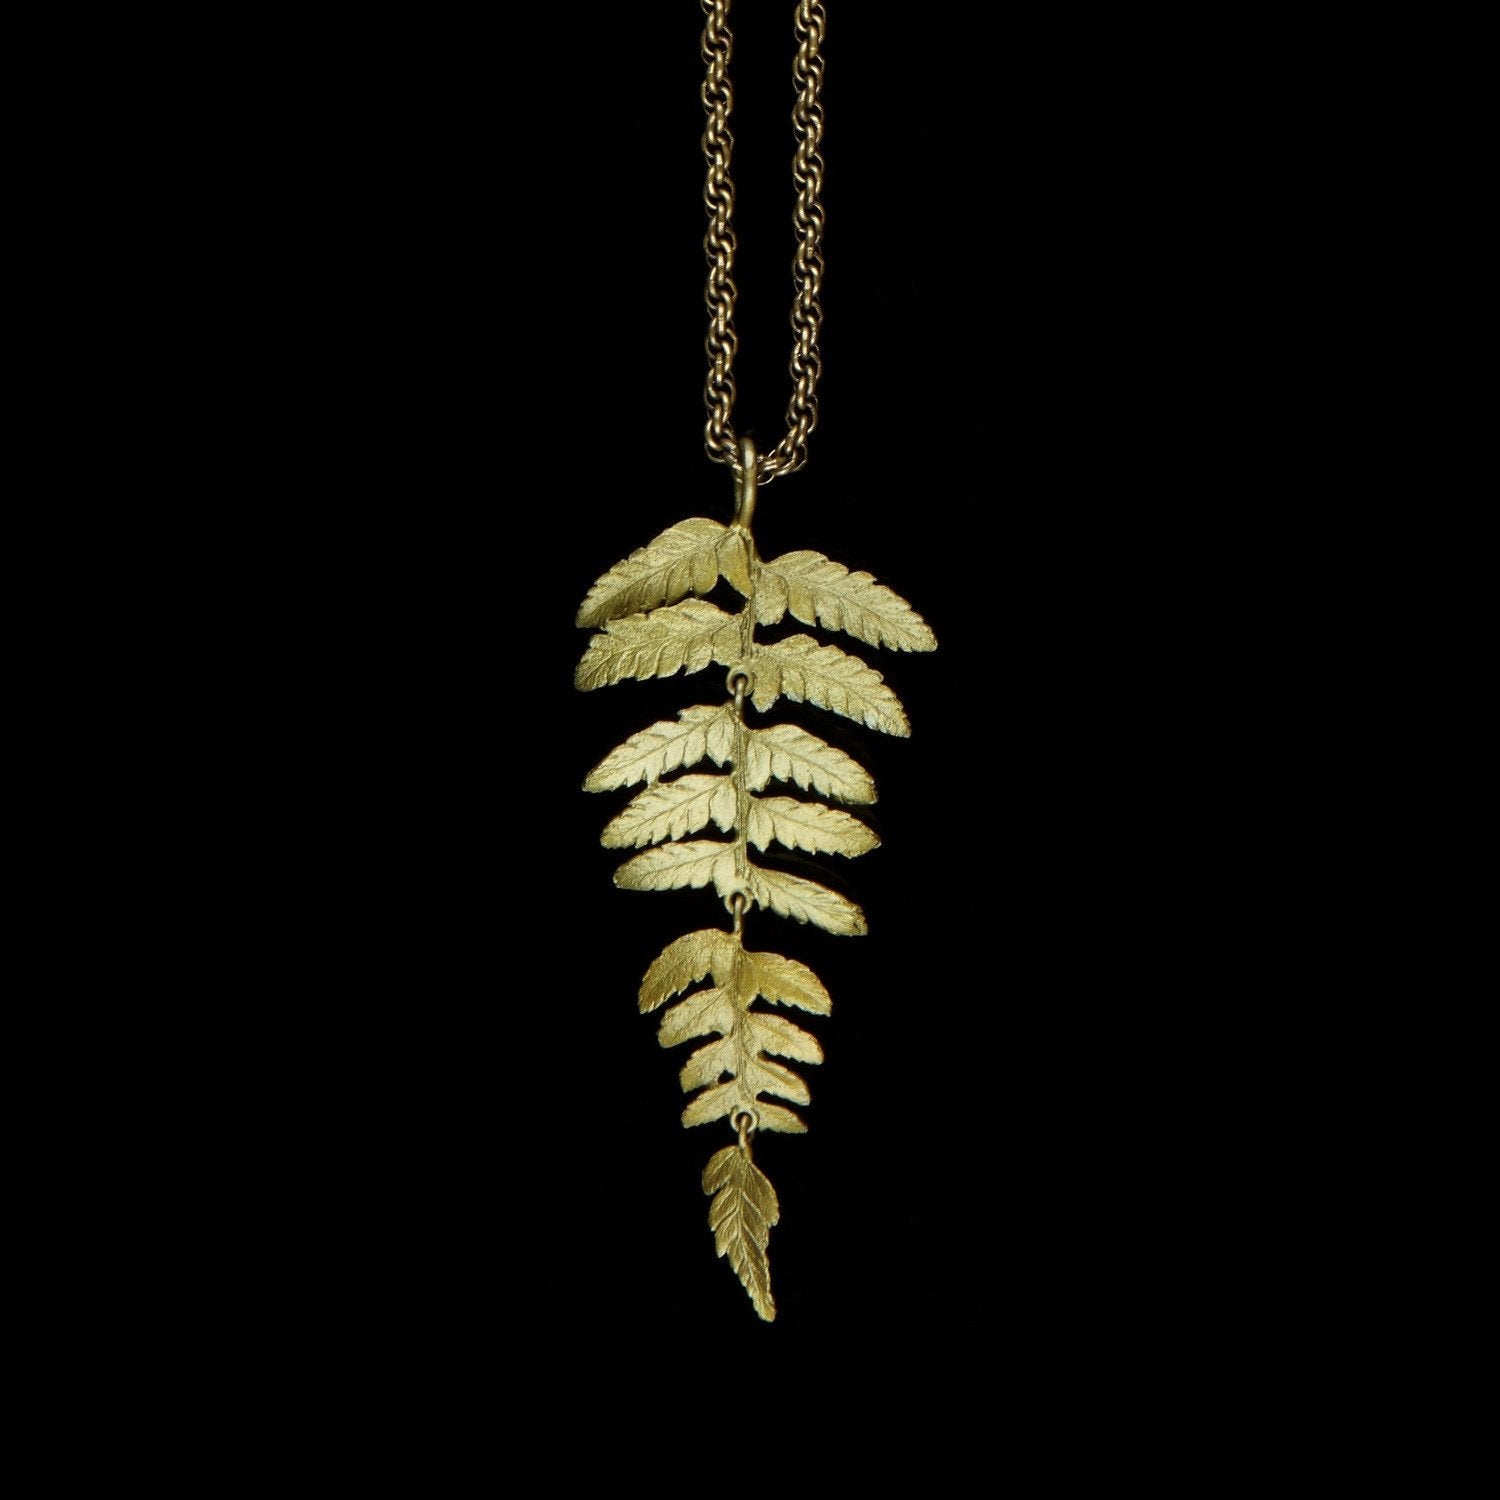 Fern Necklace - 30" Long